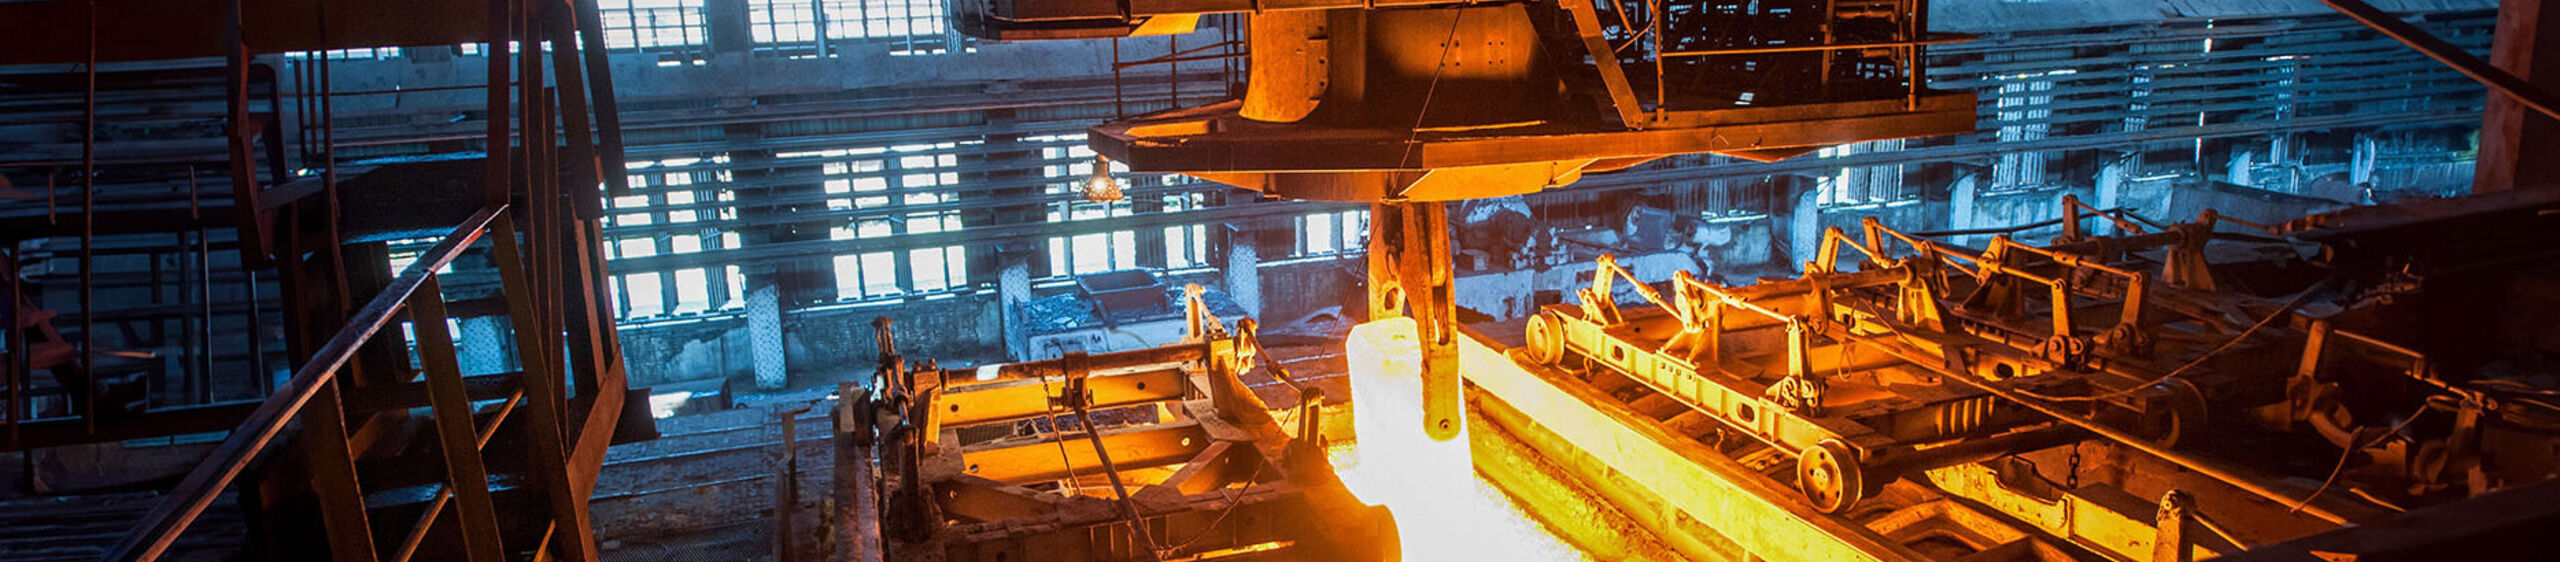 Ein Kran hebt in einem Stahlwerk einen Block glühendes Metall an